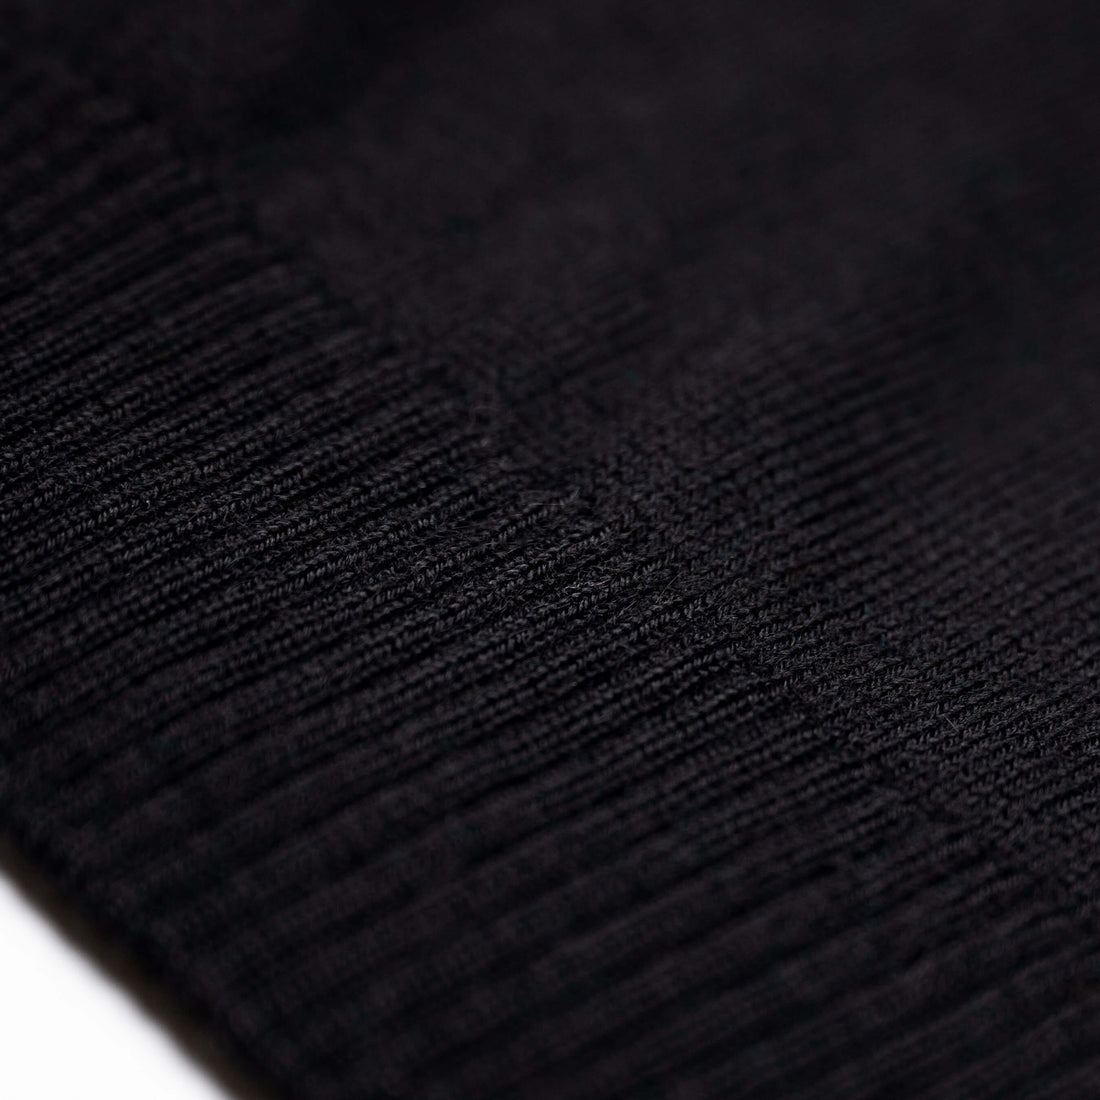 Alpakin Katari Alpaka Pullover für Herren mit Reißverschluss in schwarz Rand nah